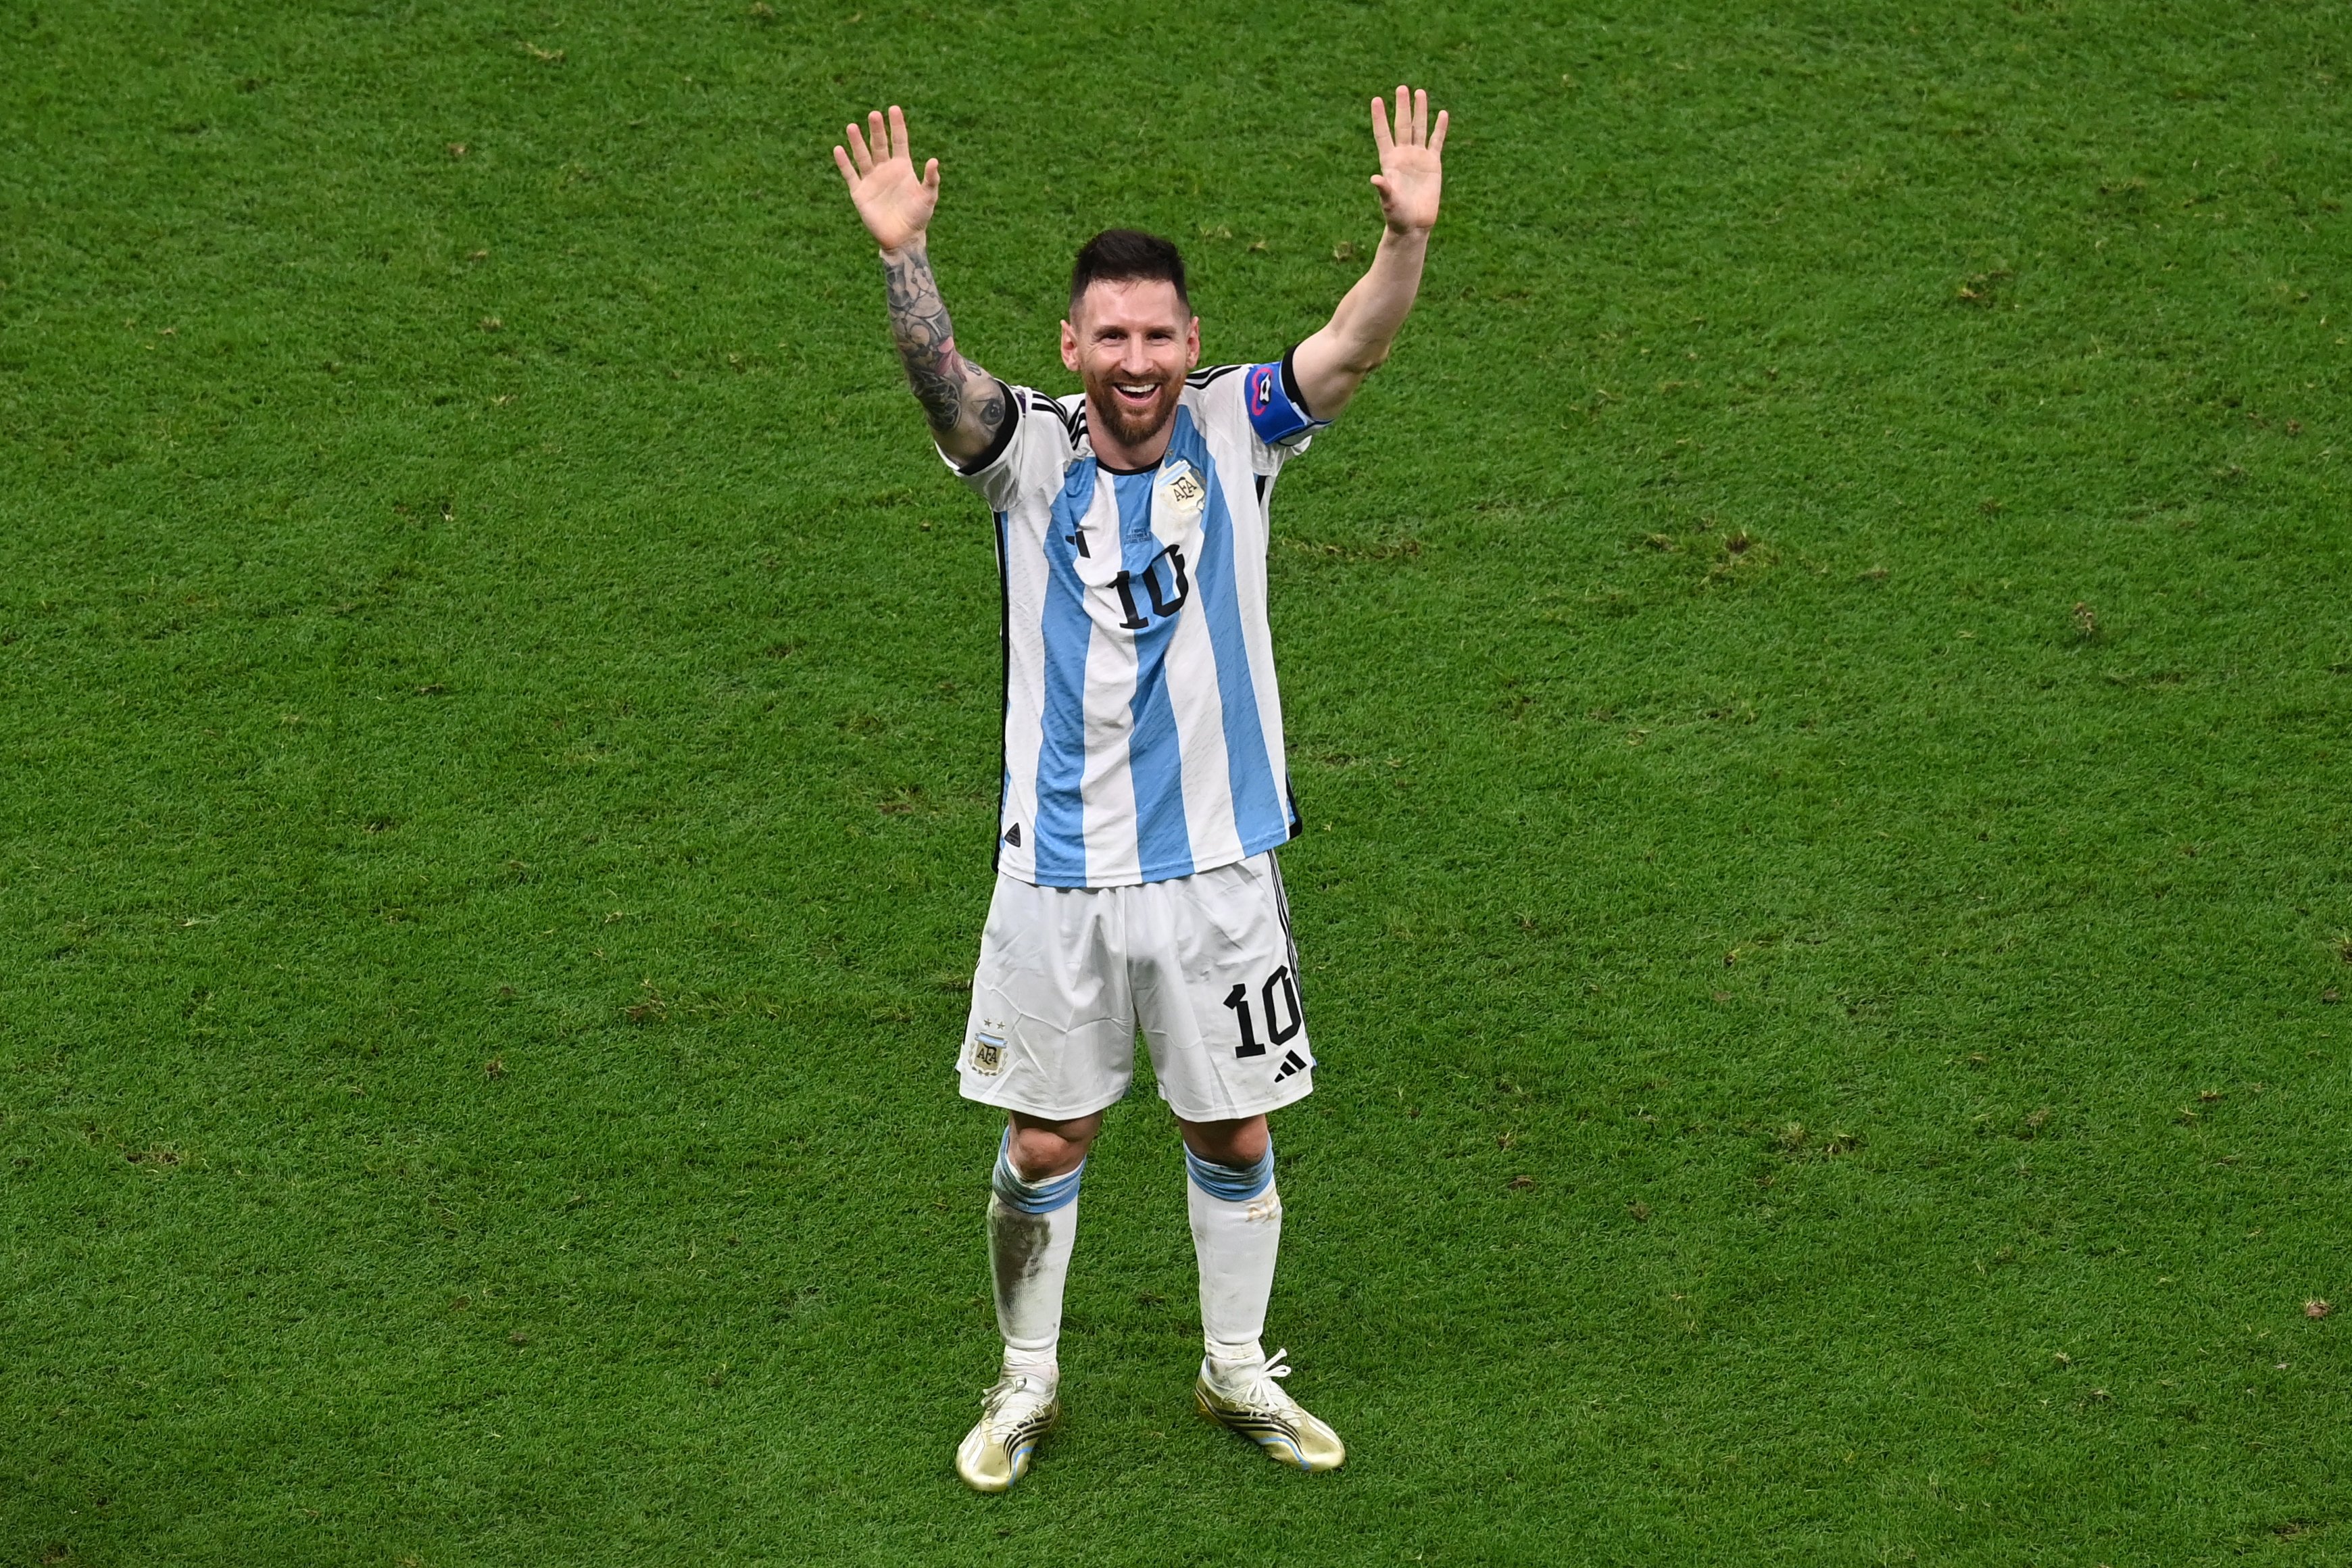 Els anti Messi, ensorrats. Reaccions patètiques a la premsa esportiva espanyola